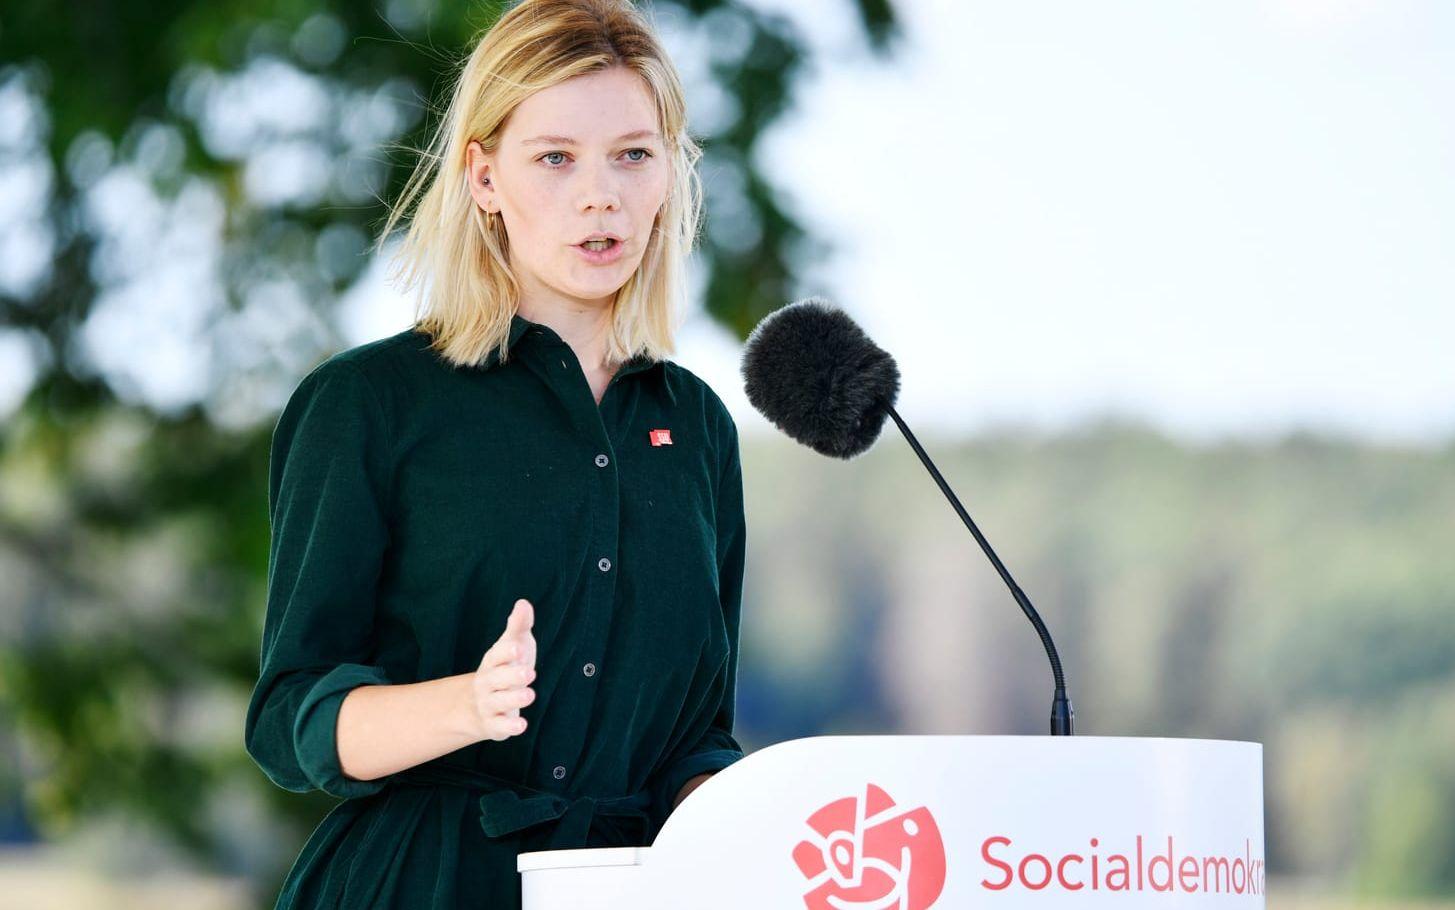 Socialdemokraternas ungdomsförbund SSU vill att rika ska betala mer i skatt. Ordföranden Lisa Nåbo: ”Den allra rikaste procenten får över 65 procent av alla kapitalvinster i Sverige. Våra resurser är extremt ojämlikt fördelade”.